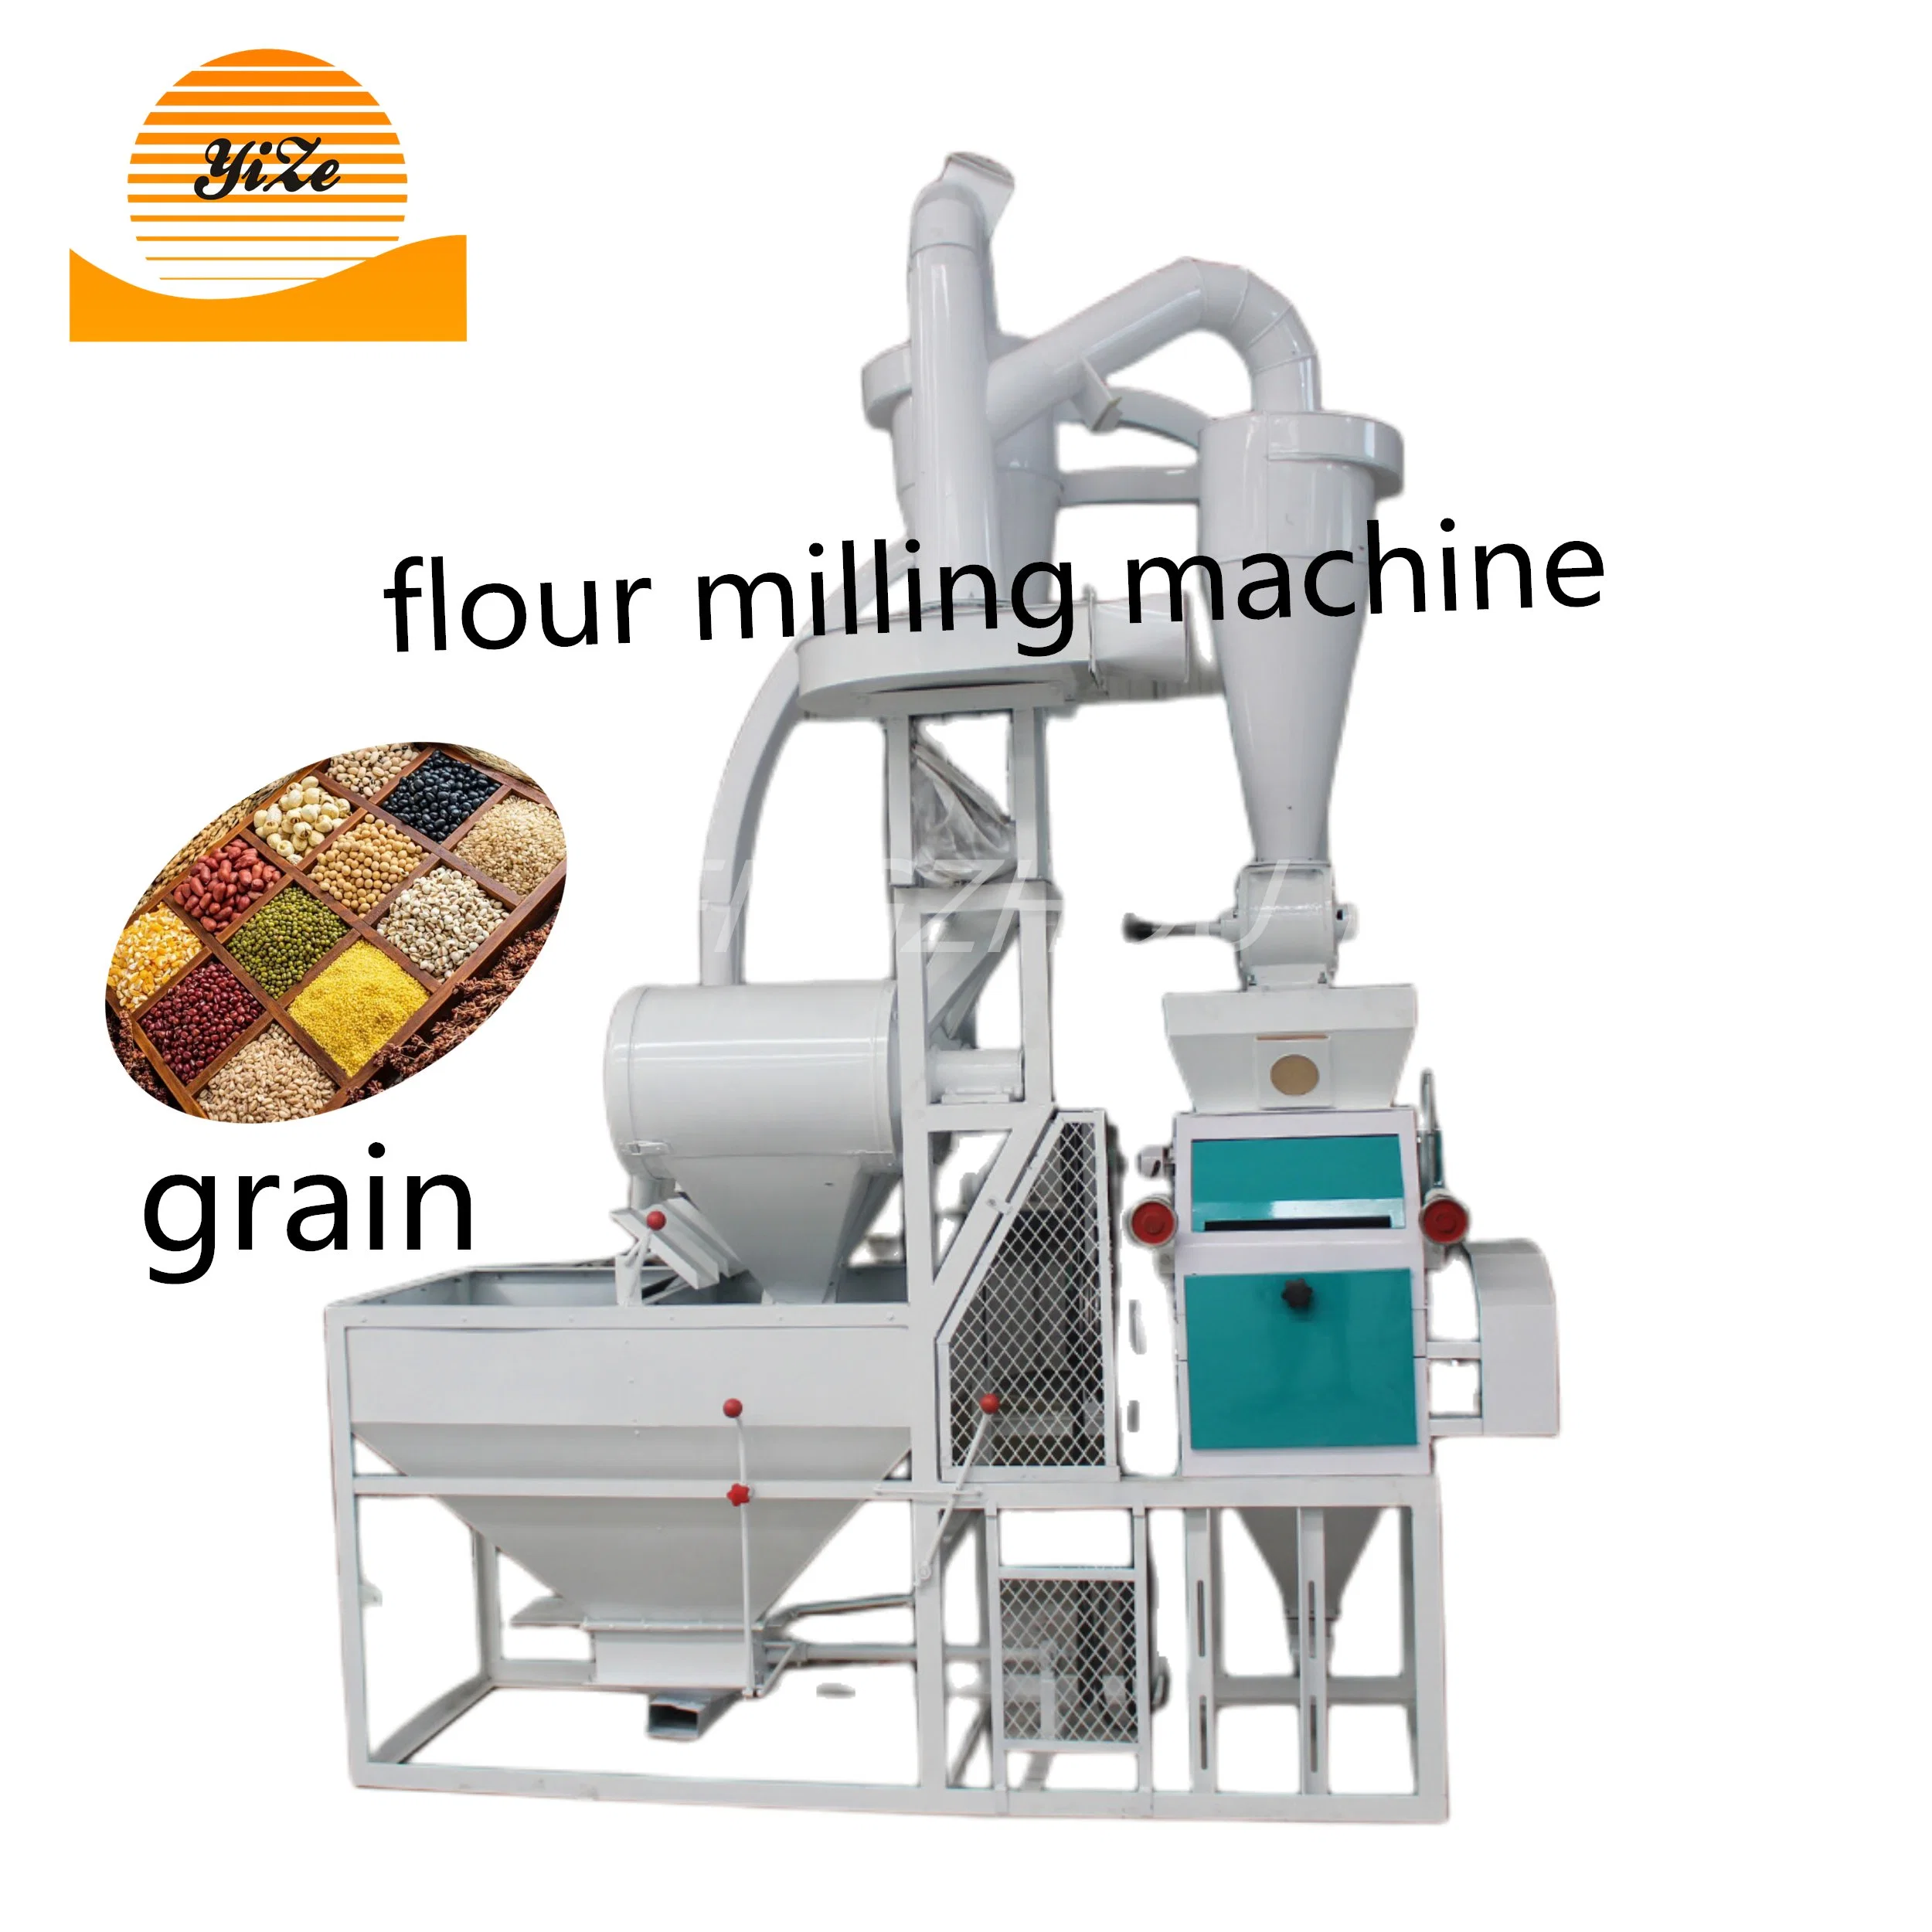 ماكينة تصنيع طحين الحبوب الكبيرة للمطاحن آلة تصنيع الطحين من اللوز والقمح والذرة ومعالجة الأغذية بسعر